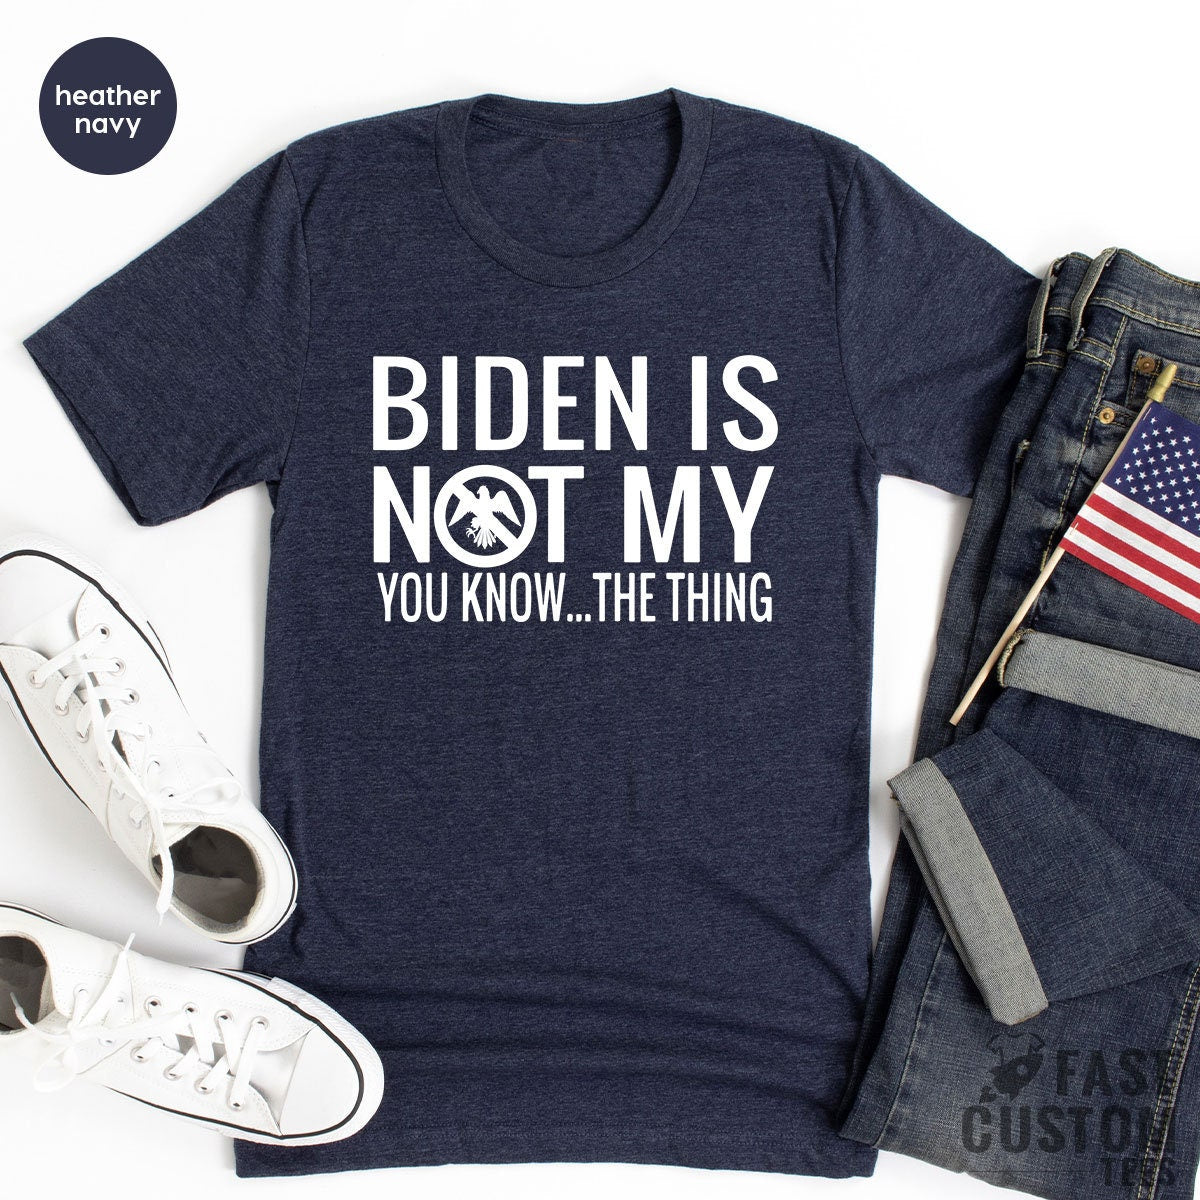 Trump Shirt, Funny Republican Shirt, Biden Is Not My Shirt, Anti Biden Shirt, Political Shirt, Anti Democrat Shirt, Anti Joe Biden Shirt - Fastdeliverytees.com